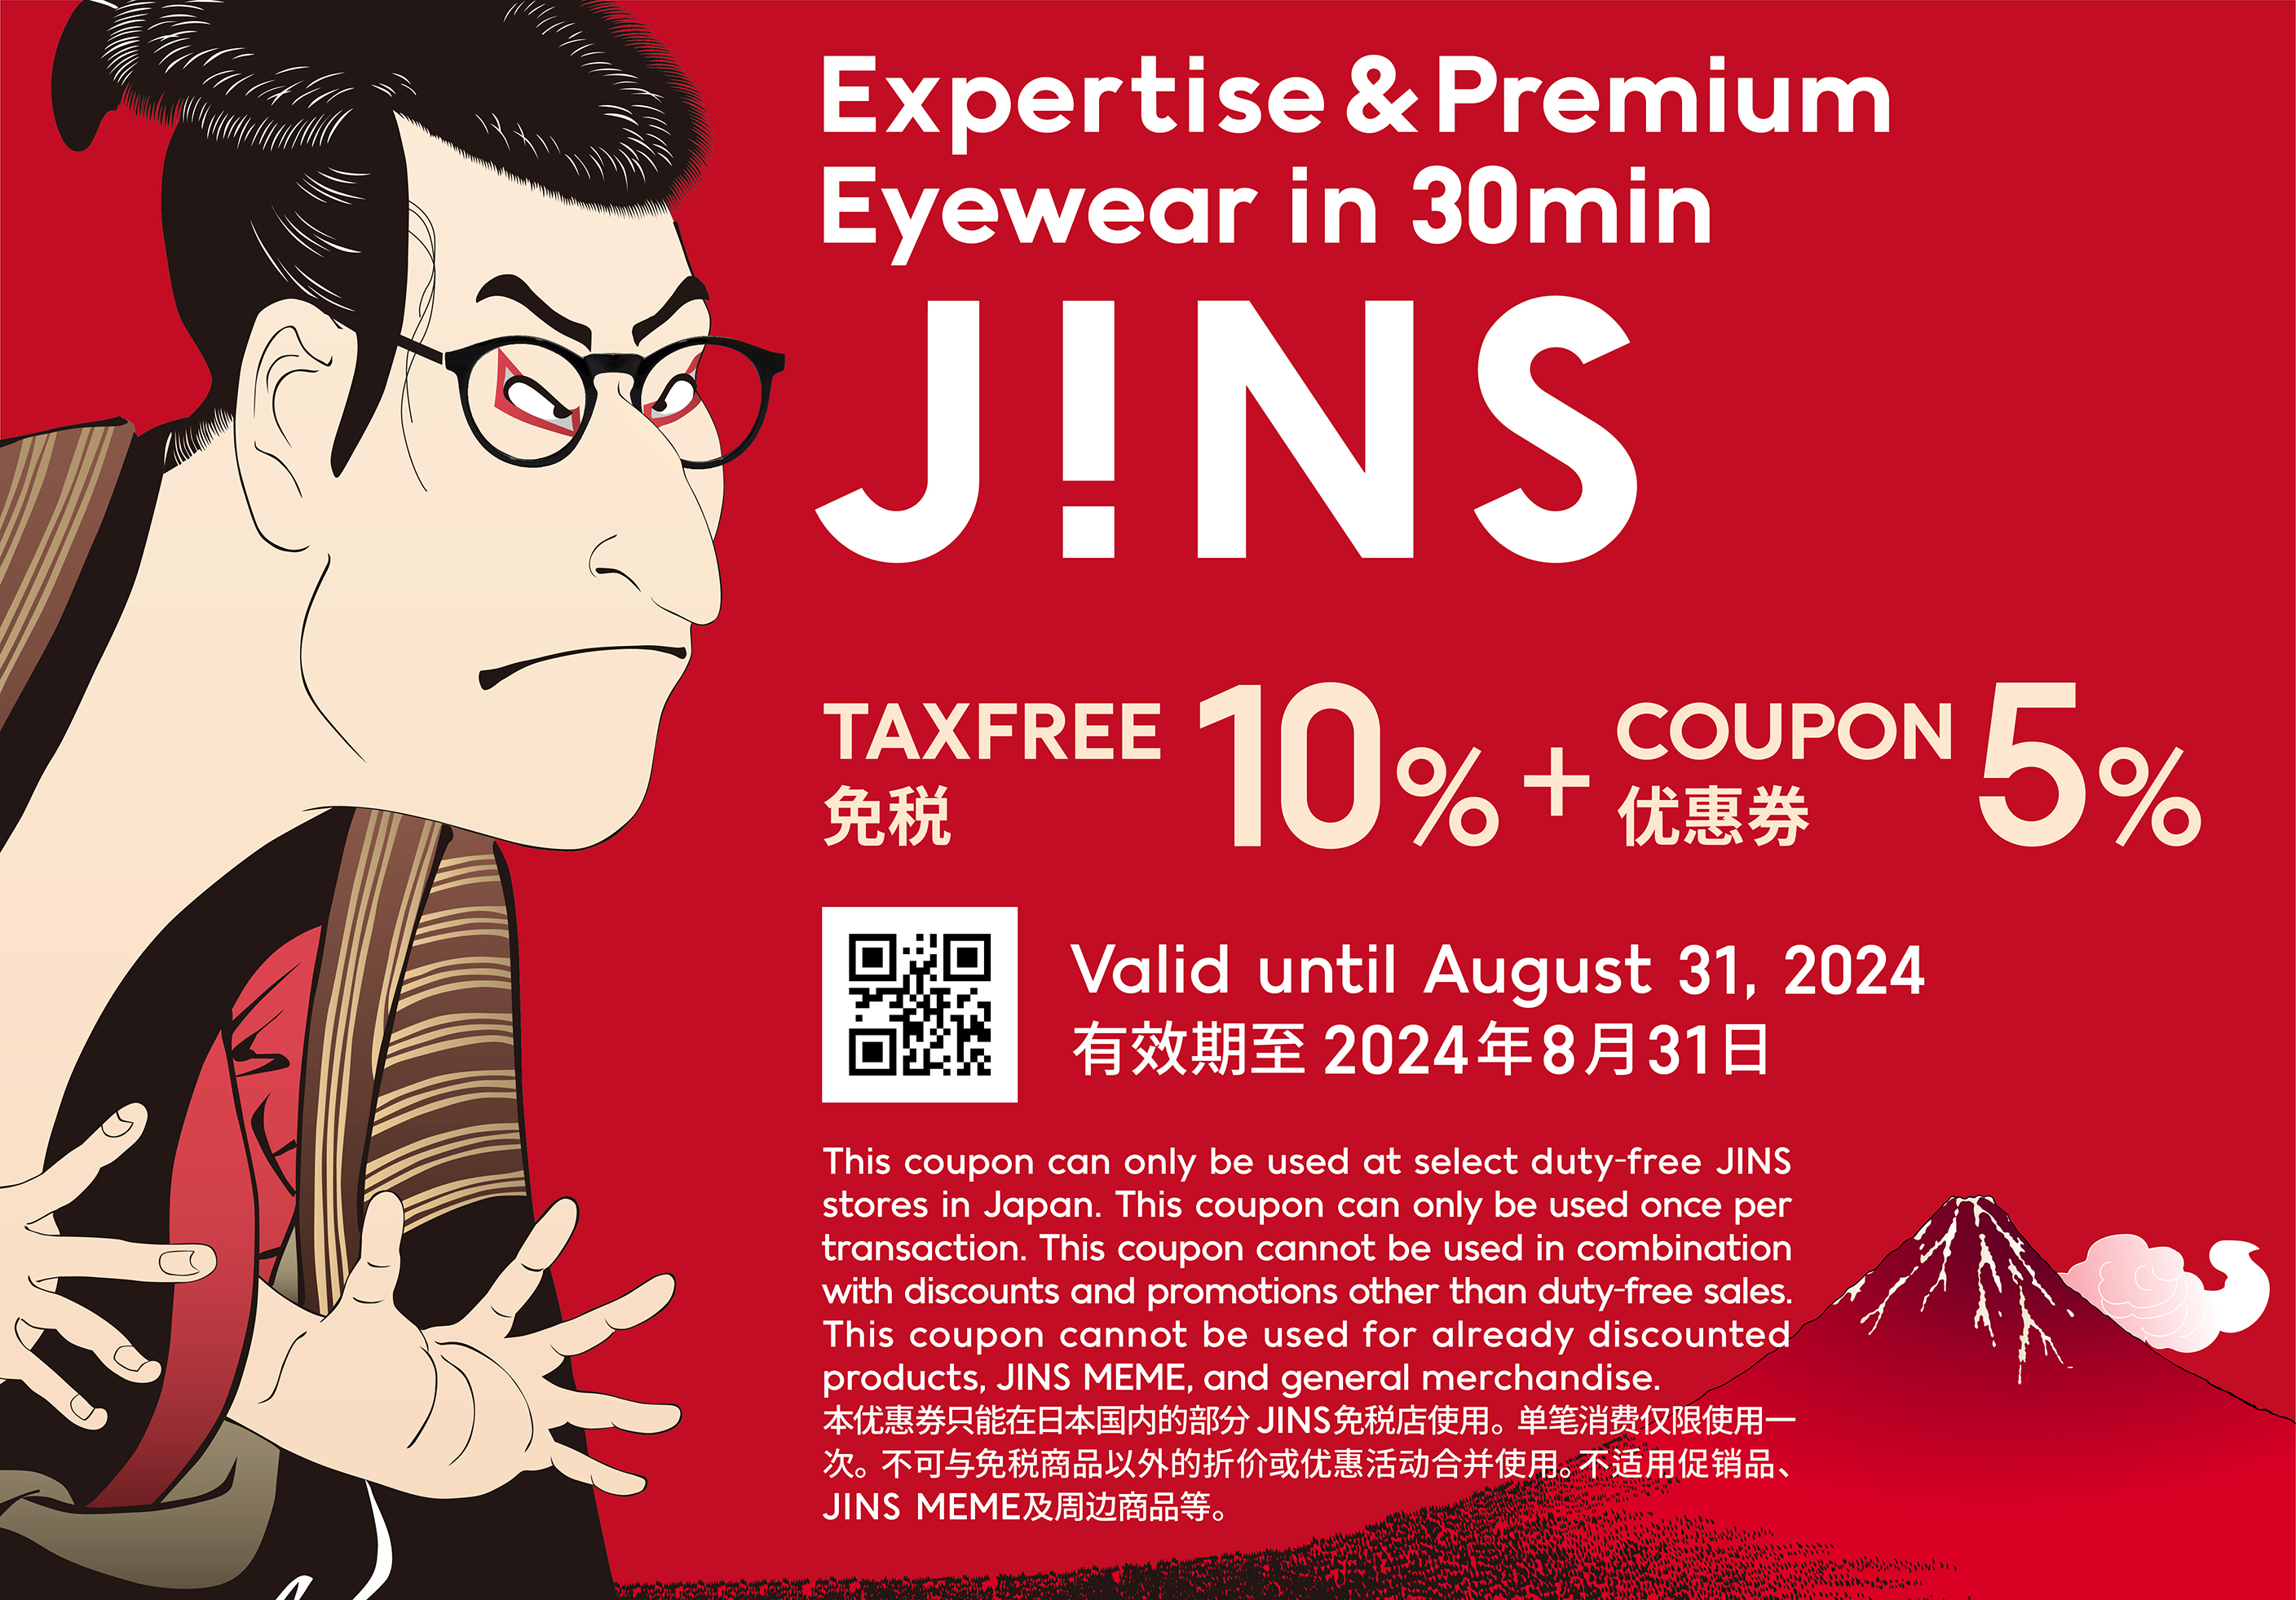 jins coupon